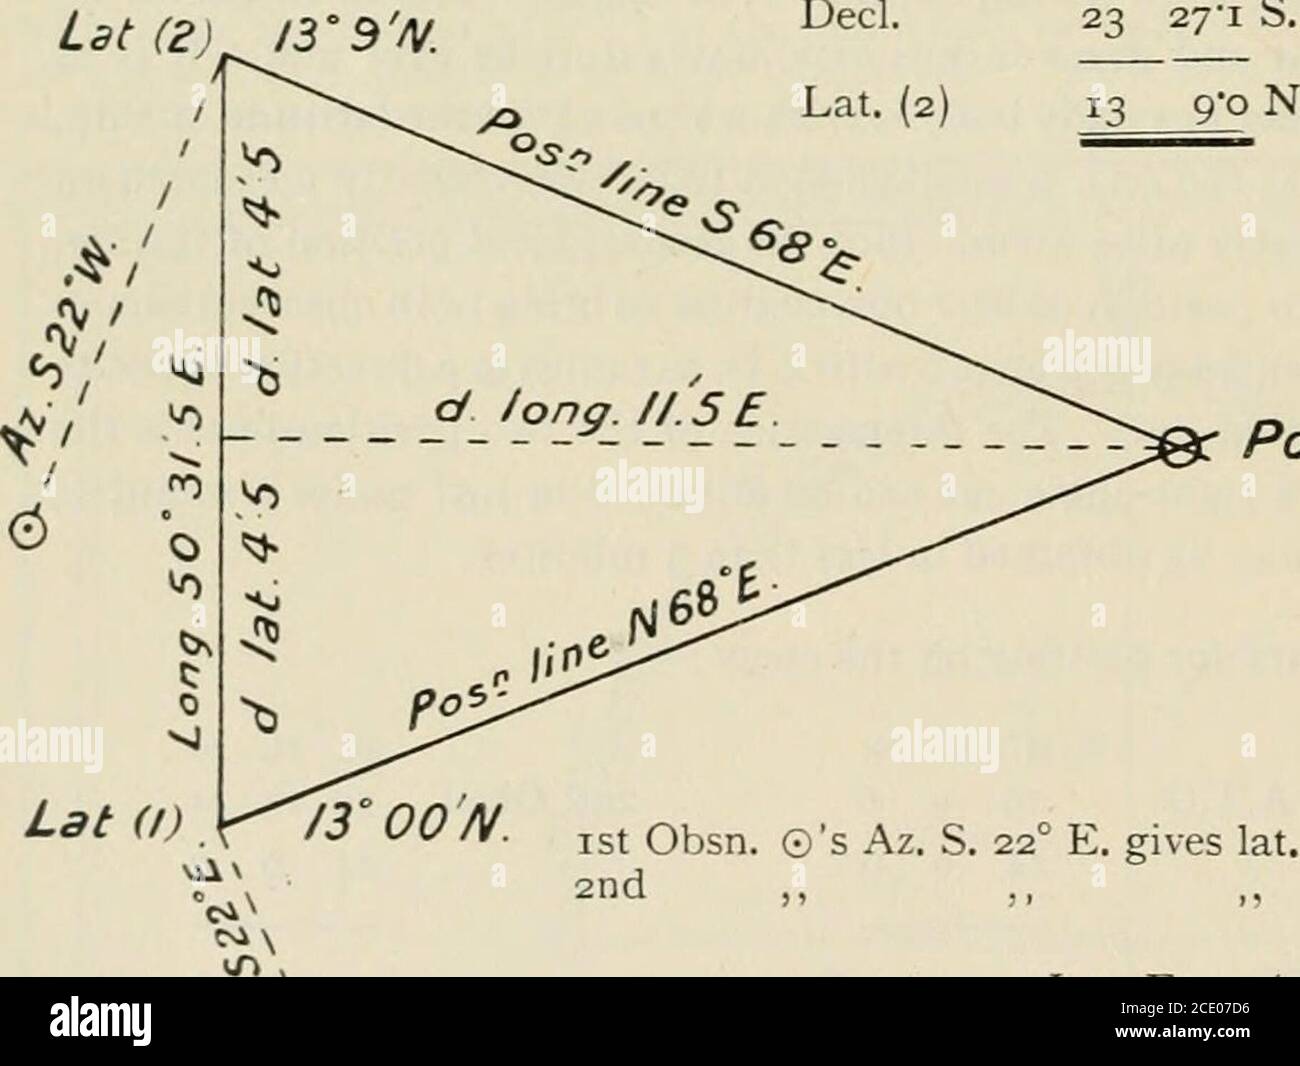 . Tableaux des angles d'heure calculés et de l'azimut d'altitude Tableau 30N. À 30S. : tables ex-méridiennes 60N. À 60S. Et réductions calculées et azimuths d'étoiles brillantes de 1 heure à 3 heures de Meridian / c par H.S. Blackburne . D. H. M. S.M.T. Vert. 21 19 34 26long. 51° E. +3 24 00 M.T. SP.éq. Temps A.T. SP. H.A. 21 22 58 + 1 26 34 23 00I 00 0000 .M. AU navire. Obsd. Alt. © 5042 pi. COR. 350 art. + 9*2 M. S. Eq. De temps i 289Cor. Var. +5S S. H. 1-25 X 4-4 5-50 True Alt. -©^ 50Redn. 2 44-2507 Cor. EQ. T. i 34*4 Men Alt. 53 34-9 S. M.Z. Dist. 36 25-1 N. Déc.]. 23 2yi S. Lat. 12 58-0 N.Exécuter pour la réduction Banque D'Images